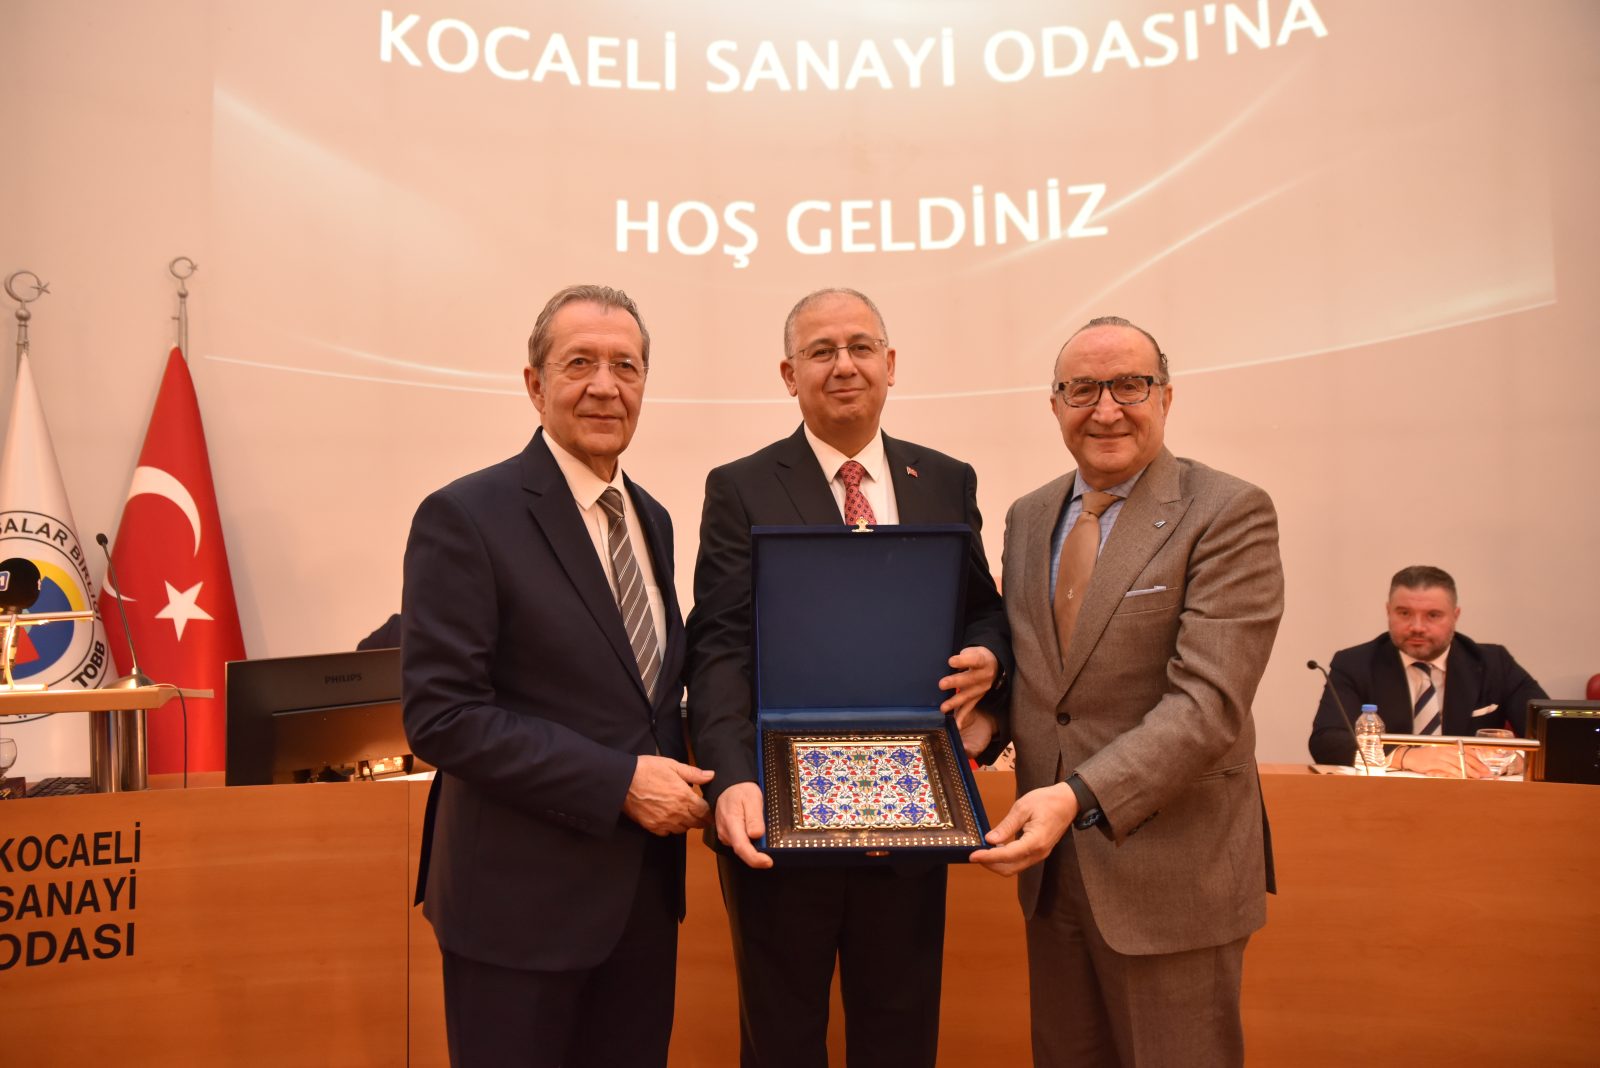 KSO Meclisi’ne Kocaeli Üniversitesi Rektörü Prof. Dr. Nuh Zafer Cantürk konuk oldu